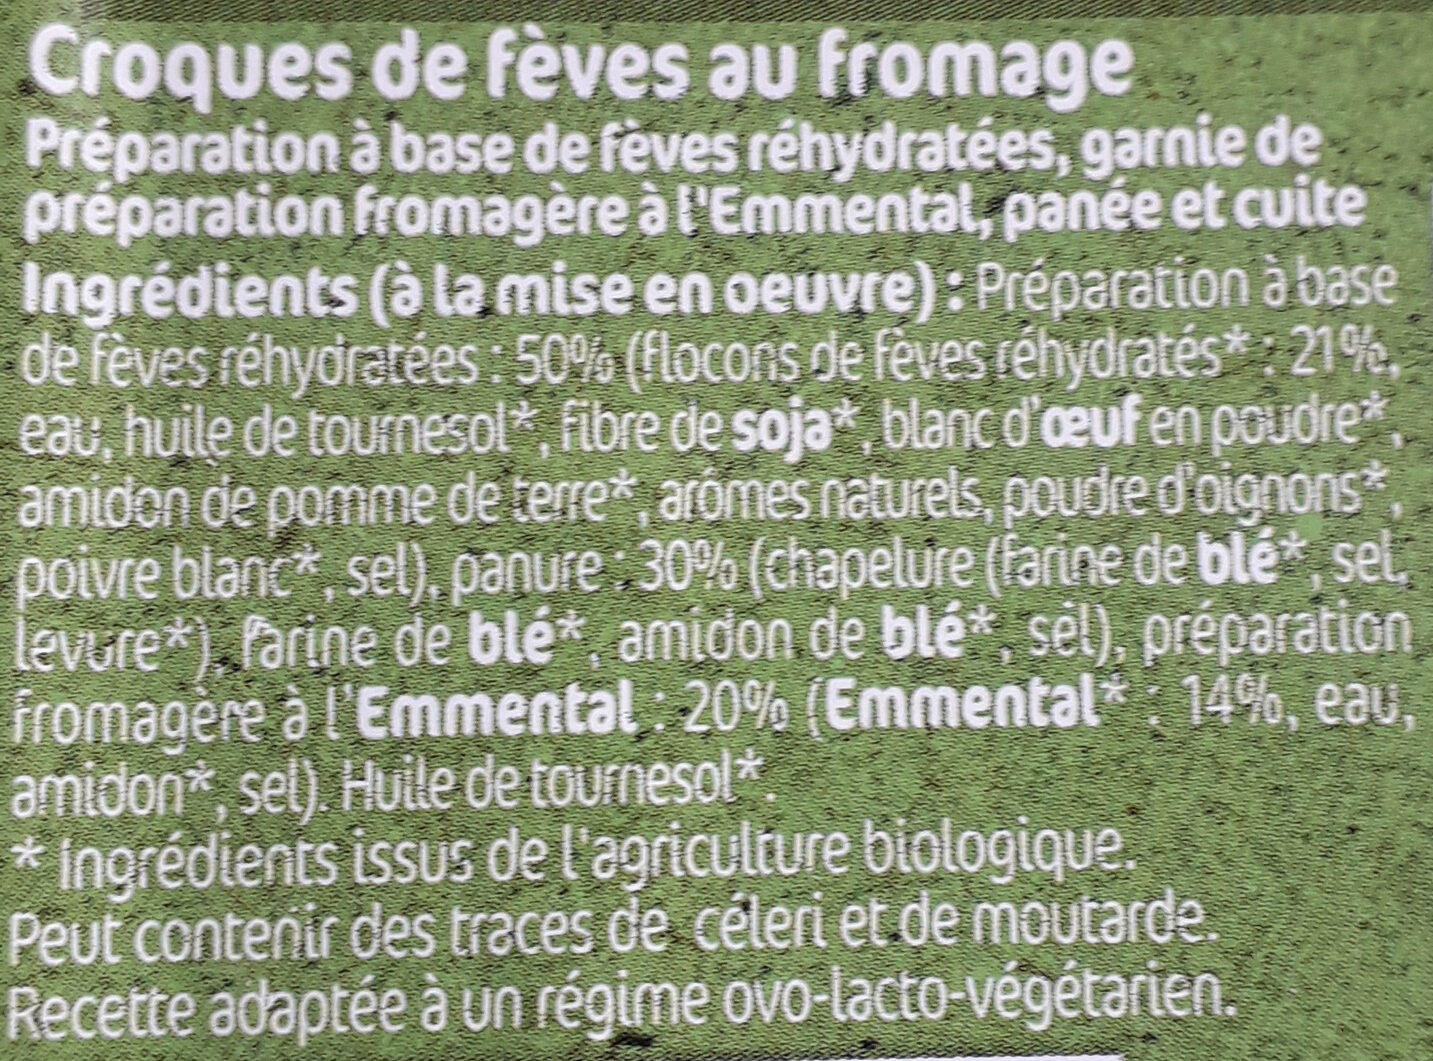 CROQUES DE FÈVES - Ingredients - fr